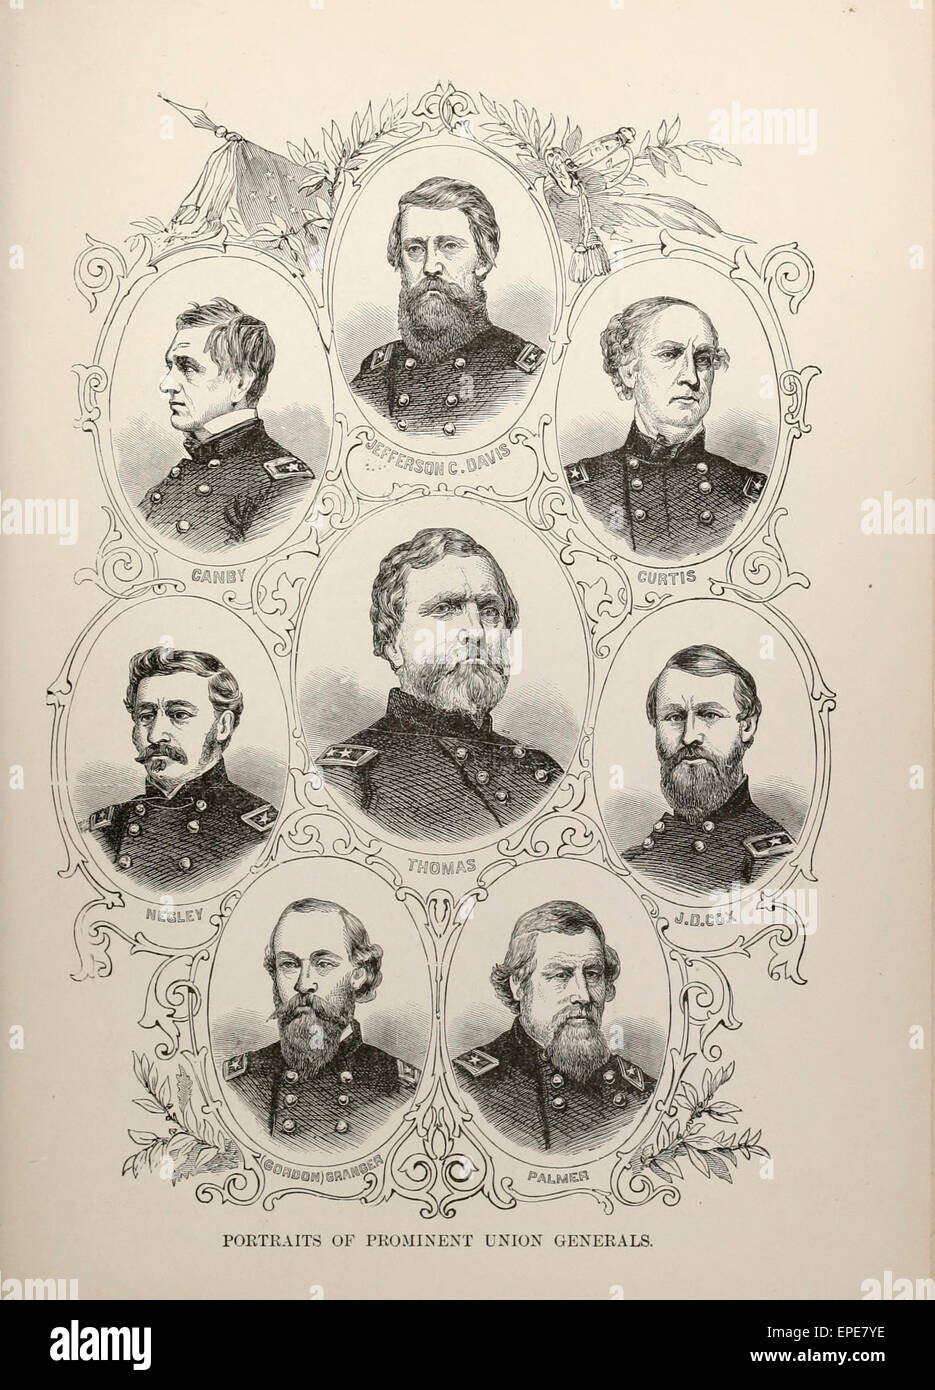 Porträts von prominenten Union Generäle während des Bürgerkriegs der USA - Negley, Canby, Jefferson Davis C, Curtis, J D Cox, Thomas, Gordin Granger, Palmer Stockfoto